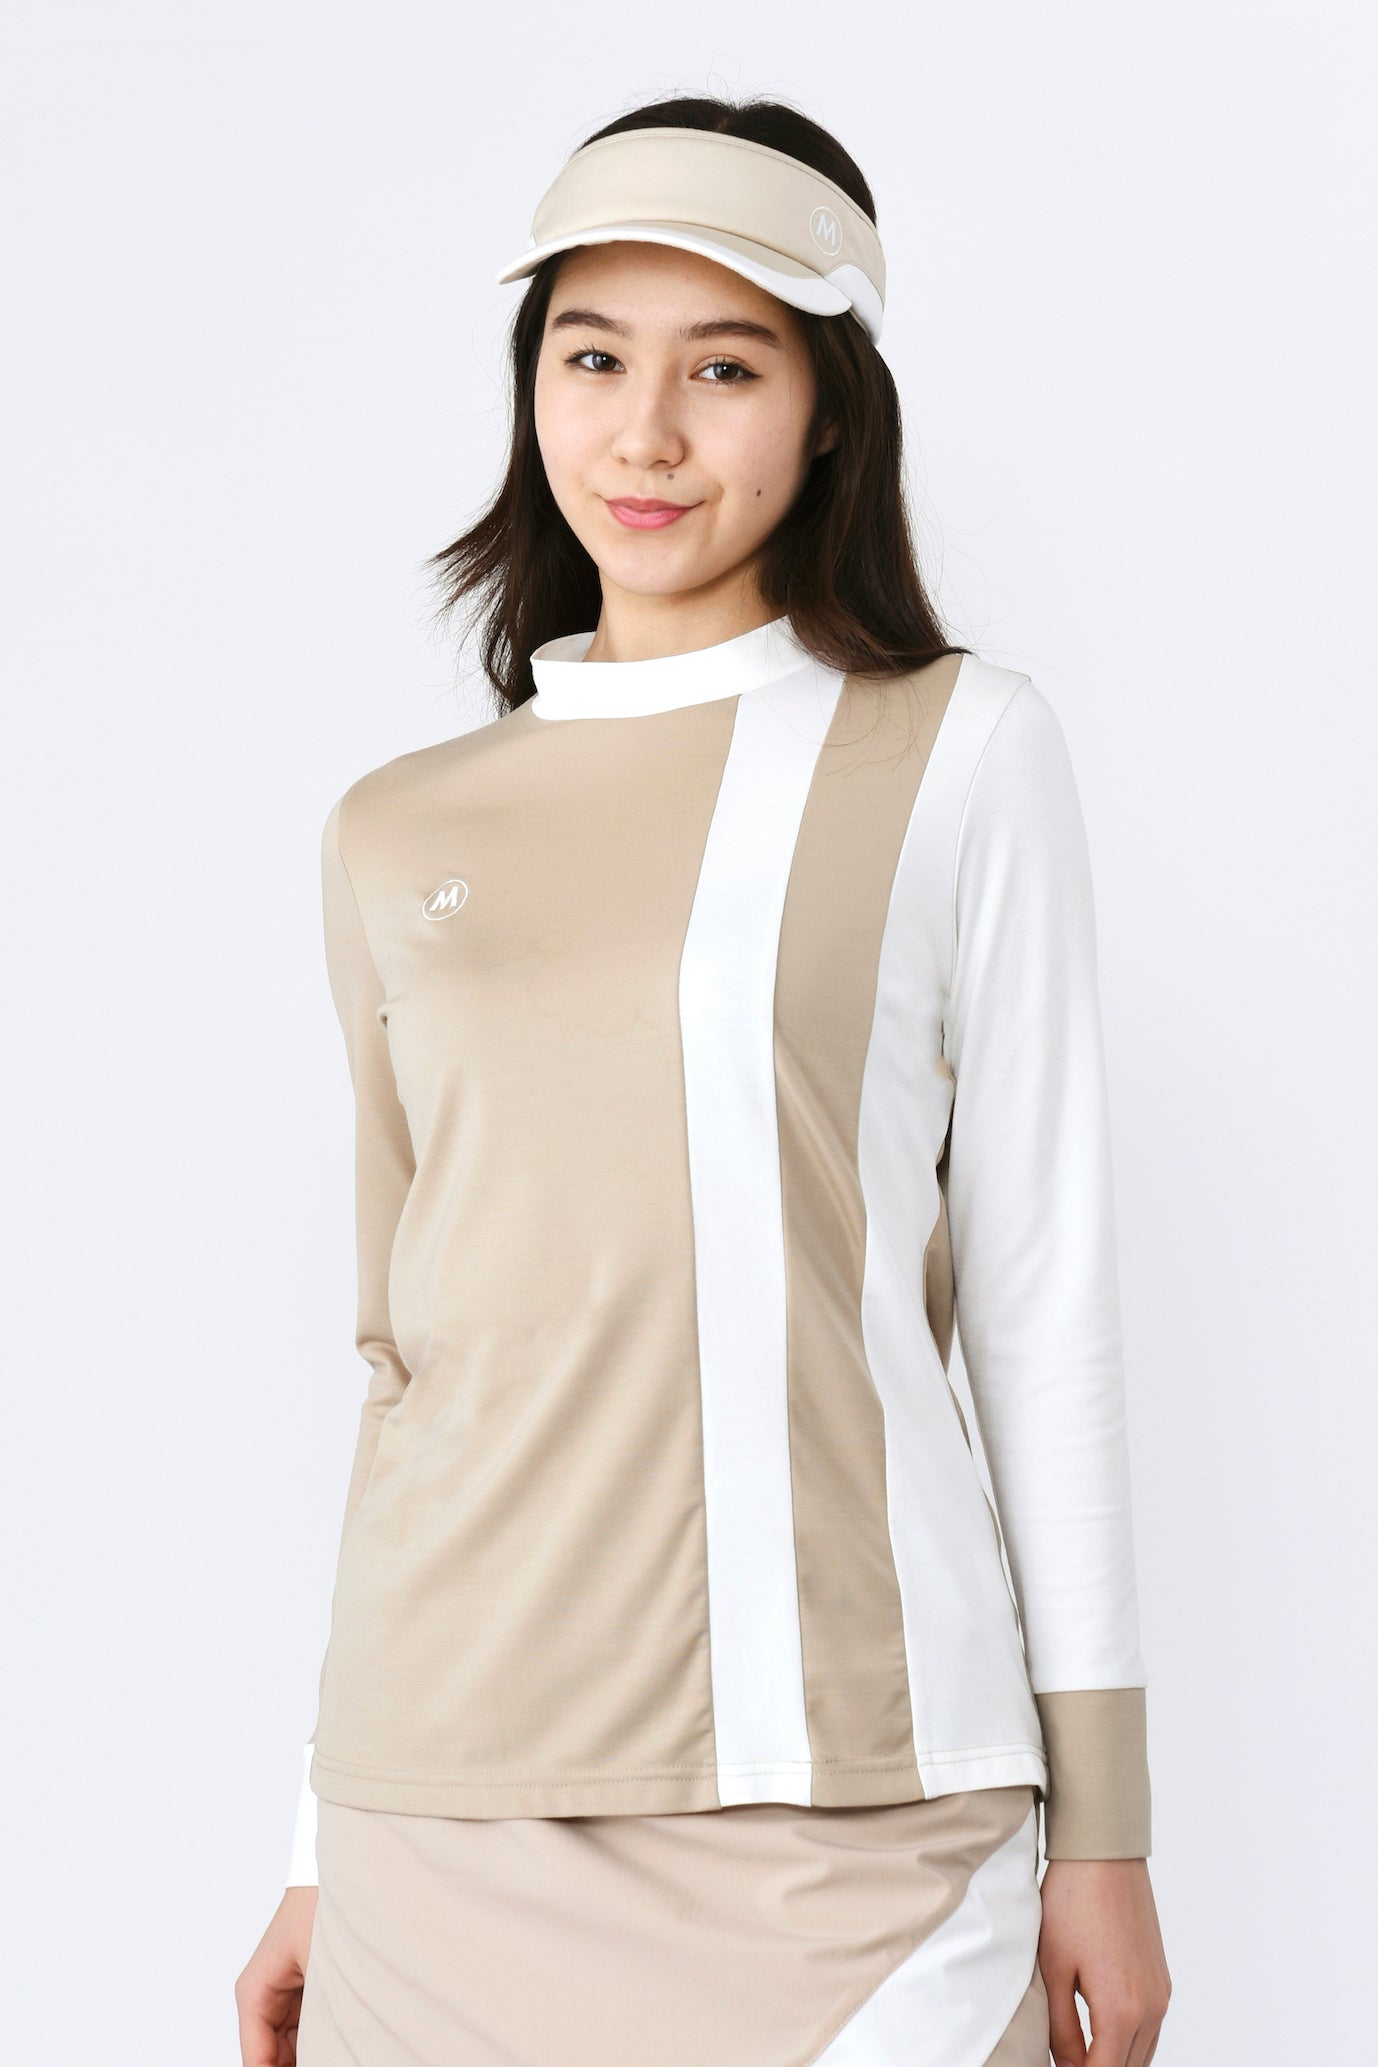 長袖高張力不對稱條紋套頭衫 (801J1450)